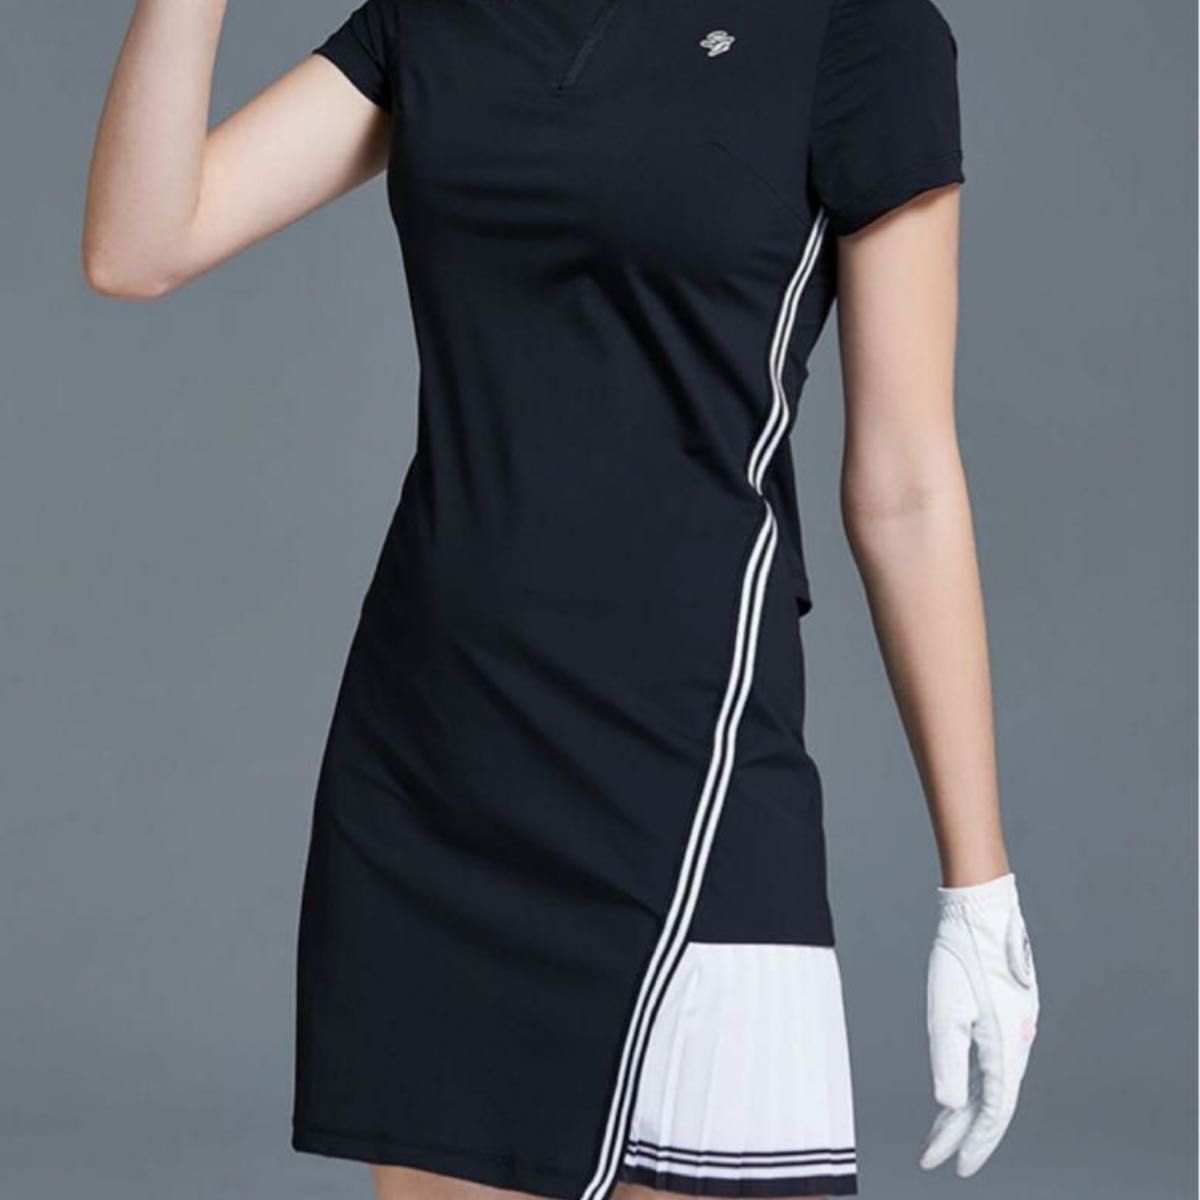 【タイムセール】大人っぽい♪ゴルフウェア レディース スポーツウェア ワンピース 半袖 ポロ モノトーン白黒 プリーツスカート